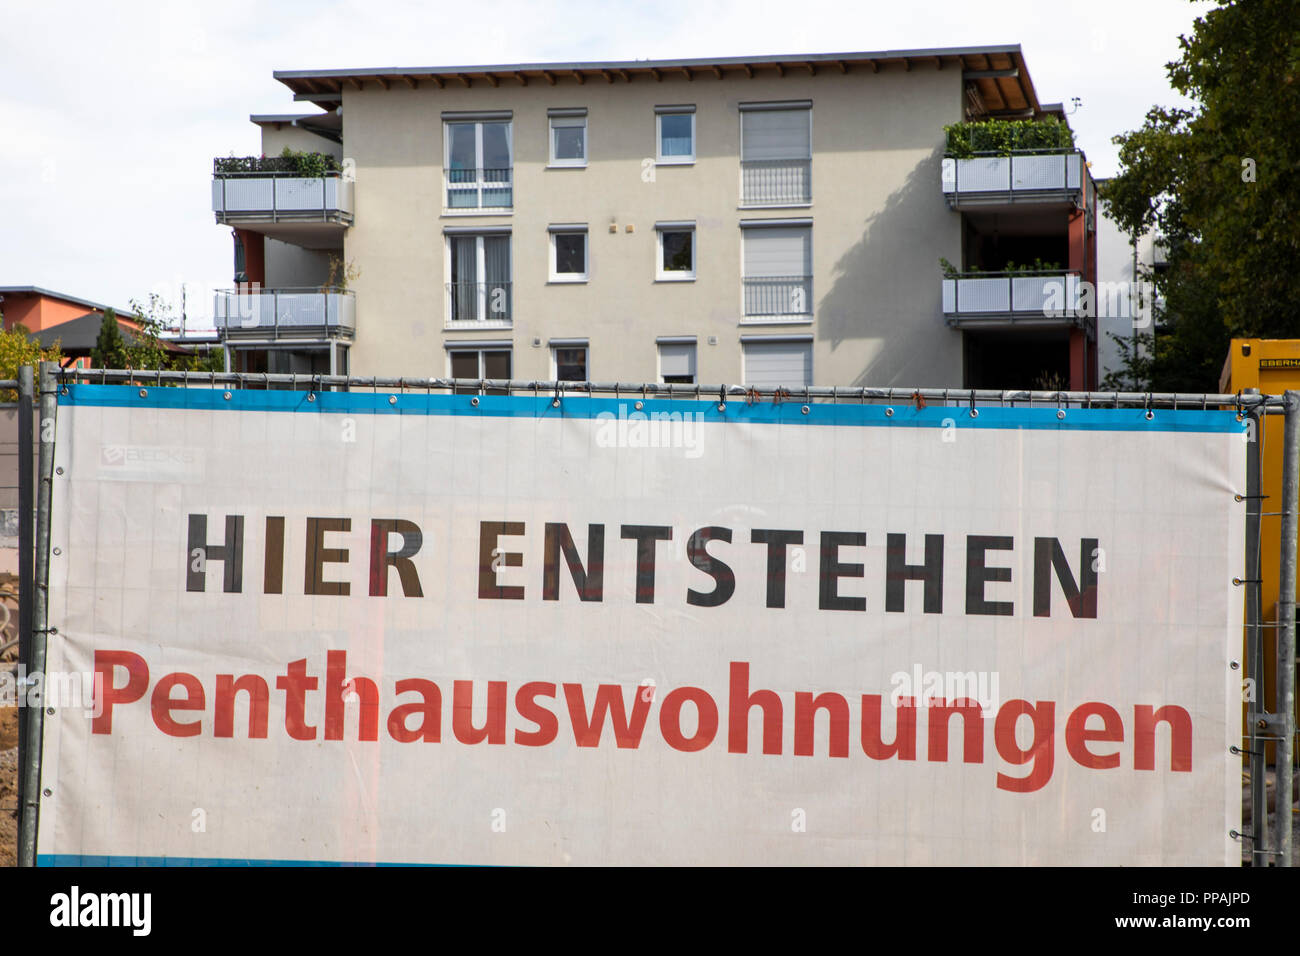 Sito in costruzione di un nuovo edificio residenziale con condomini e appartamenti penthouse, am Neckar, Heilbronn, Baden-Württemberg, Germania Foto Stock